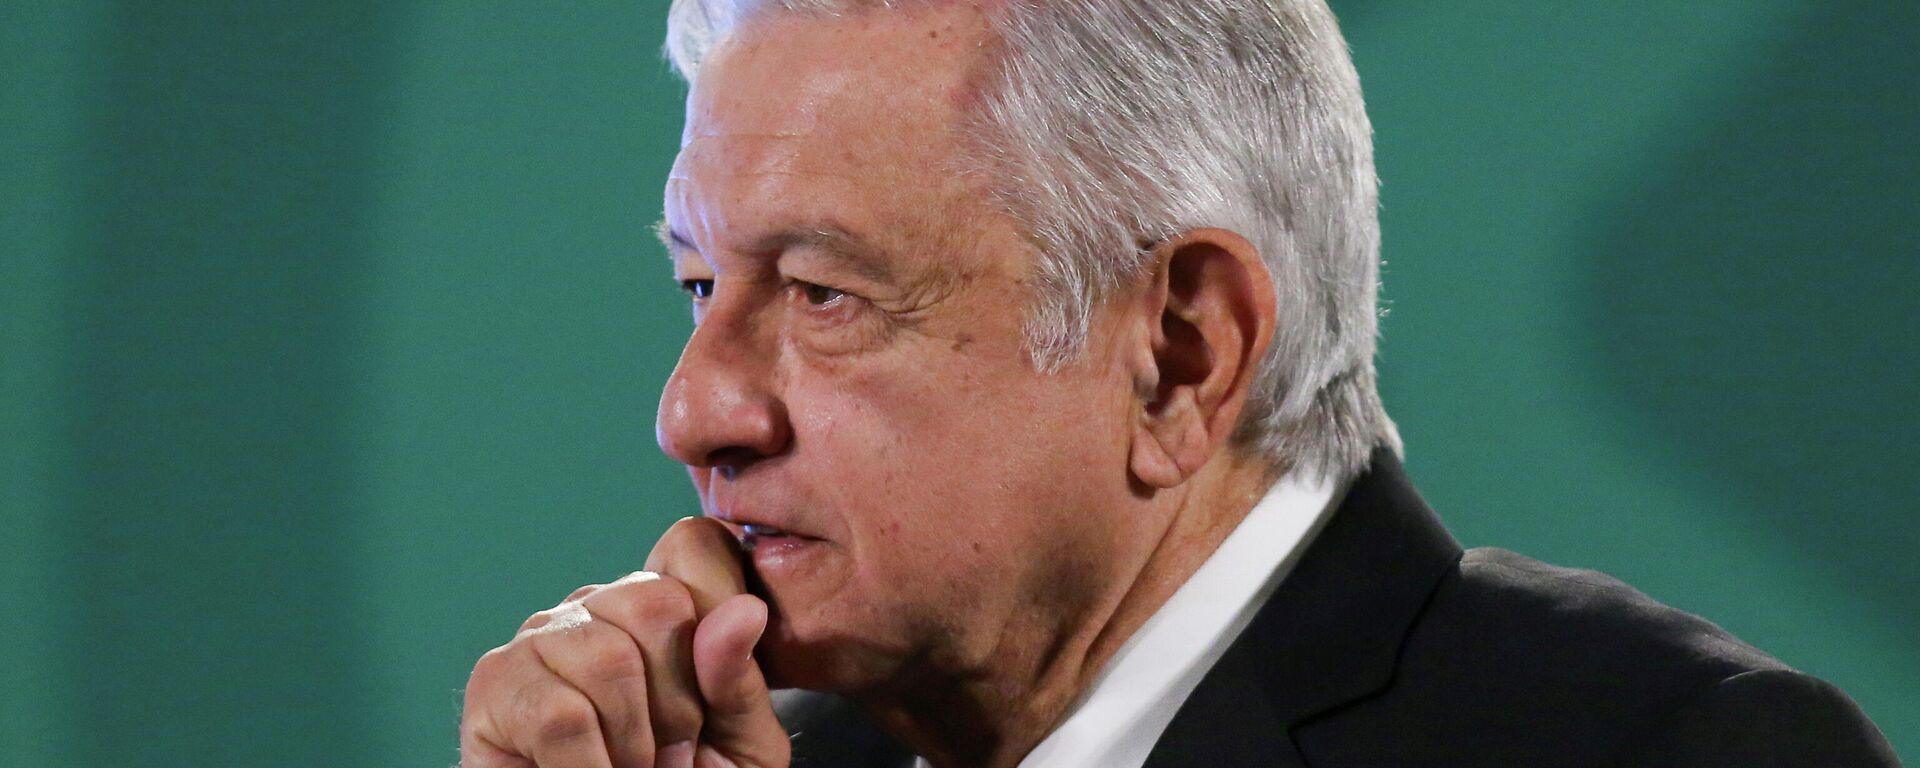 Andrés Manuel López Obrador, presidente de México - Sputnik Mundo, 1920, 21.05.2021